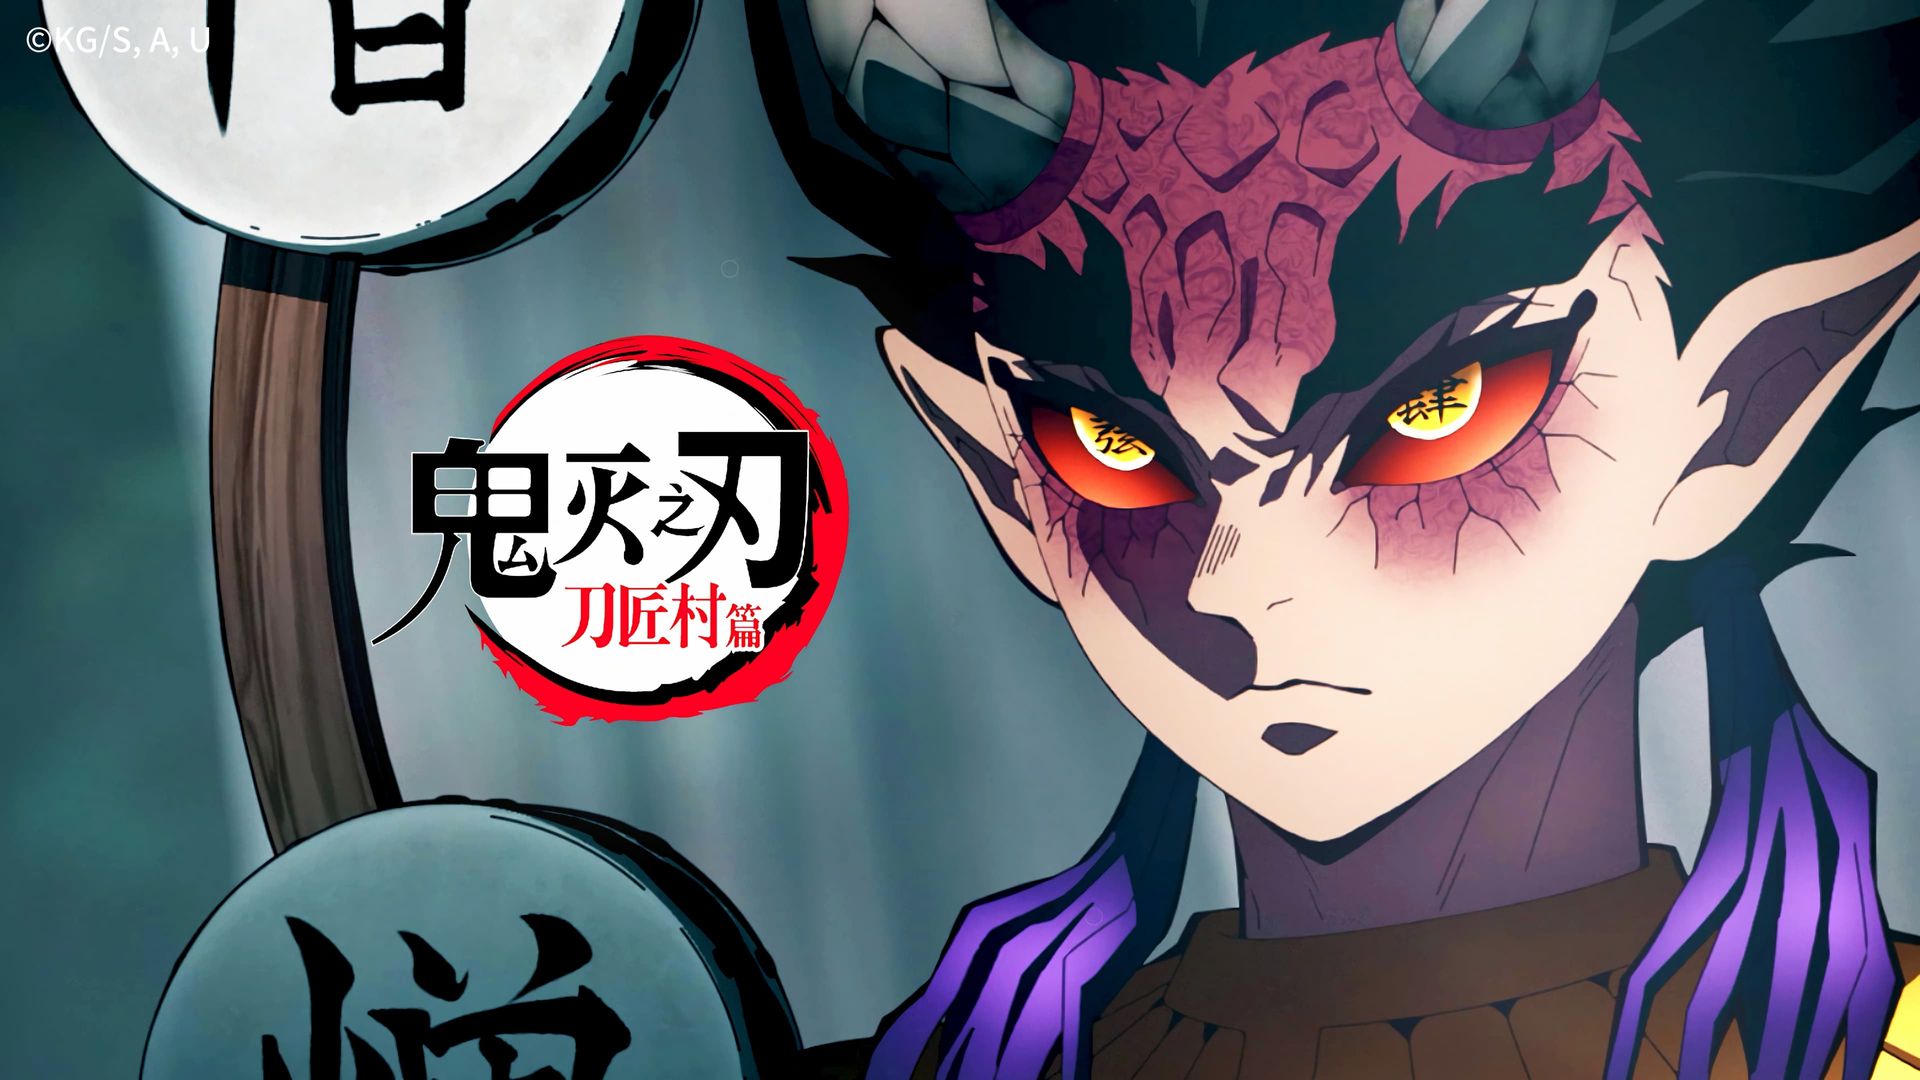 Demon Slayer: Kimetsu no Yaiba background